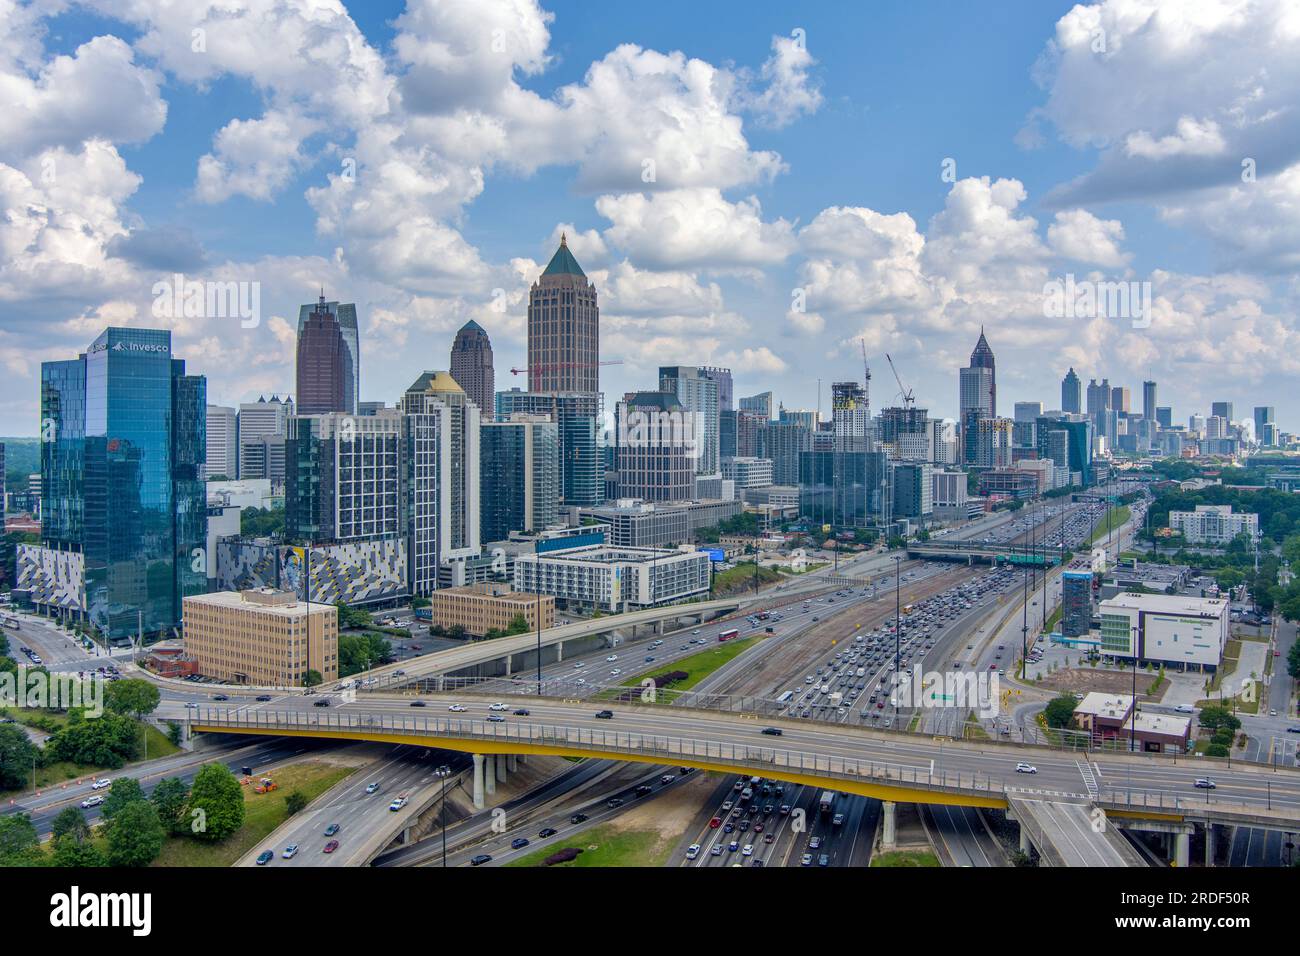 The downtown Atlanta, Georgia skyline Stock Photo